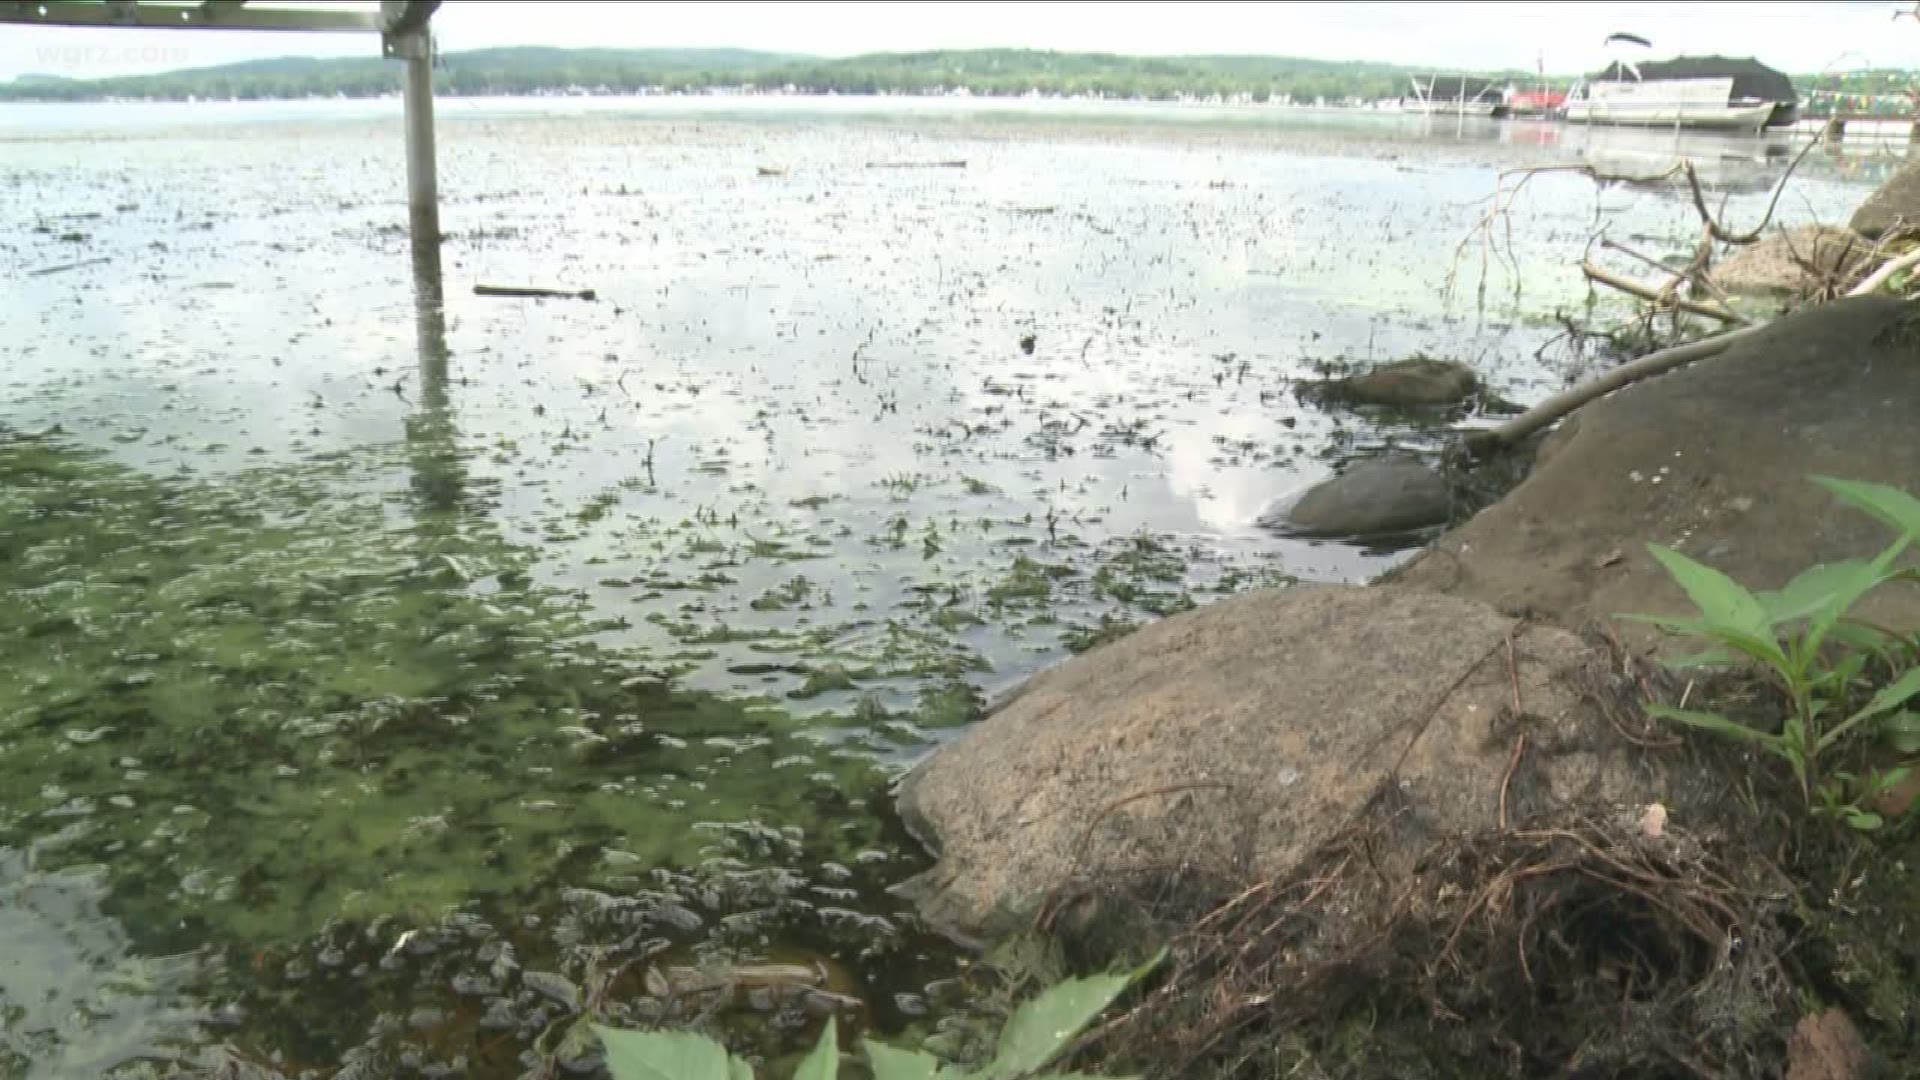 Debate Over Chautauqua Lake Conditions